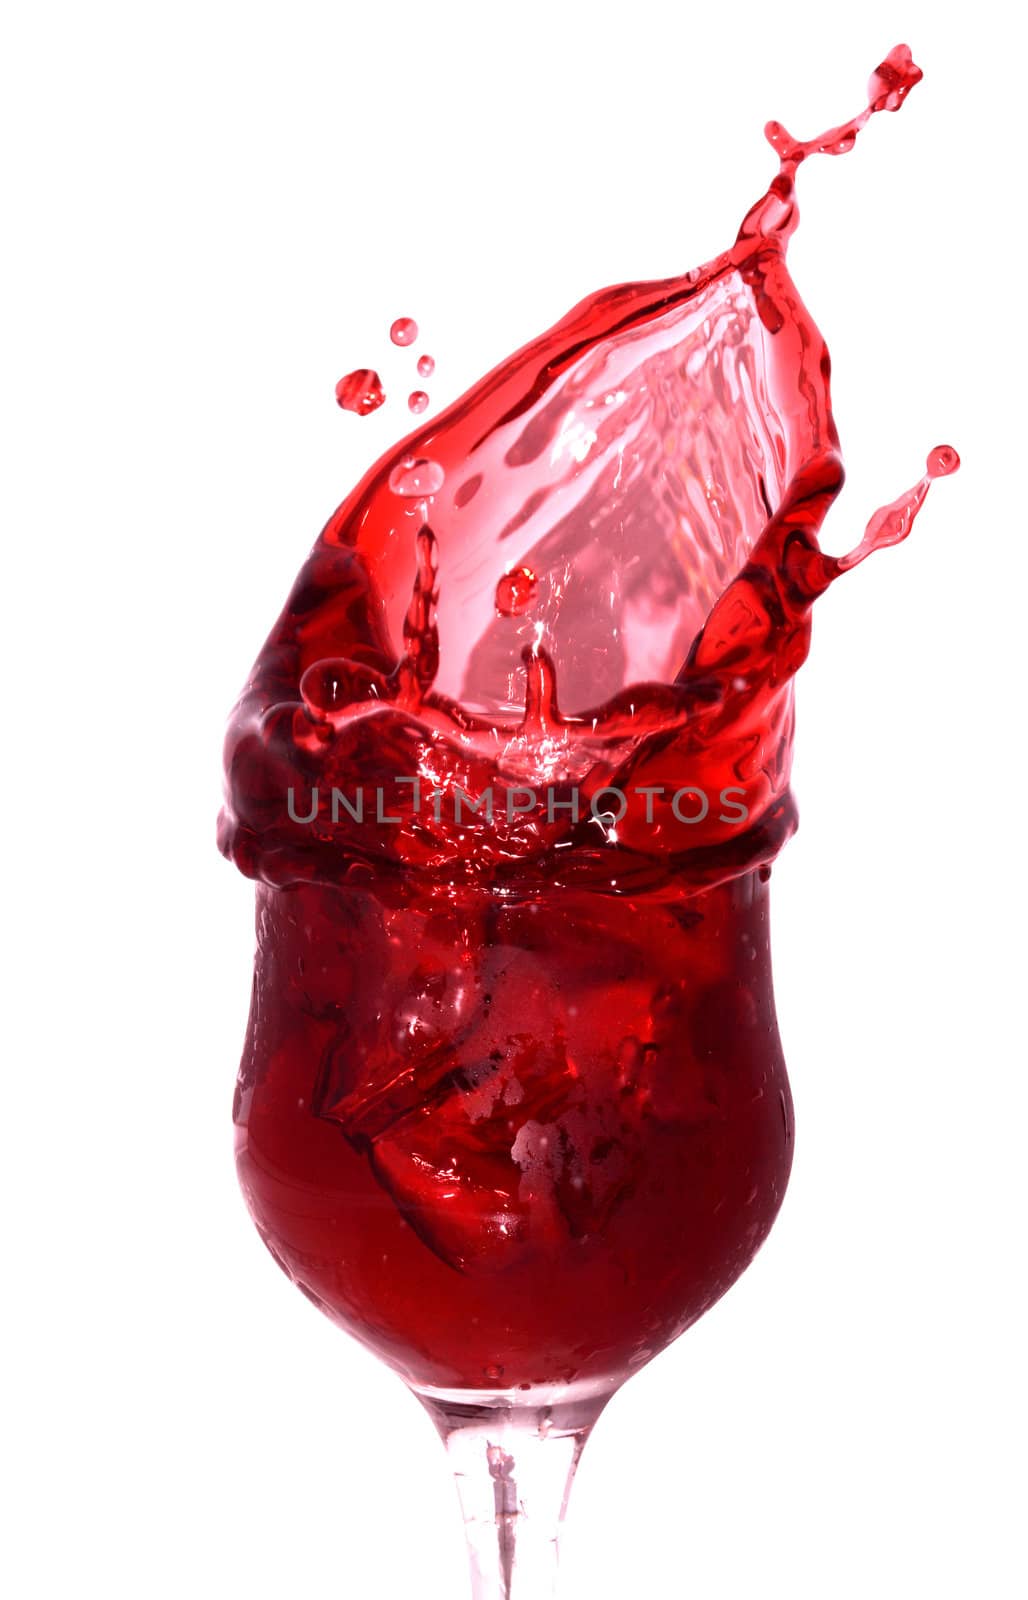 Splashing Cherry Juice by kvkirillov